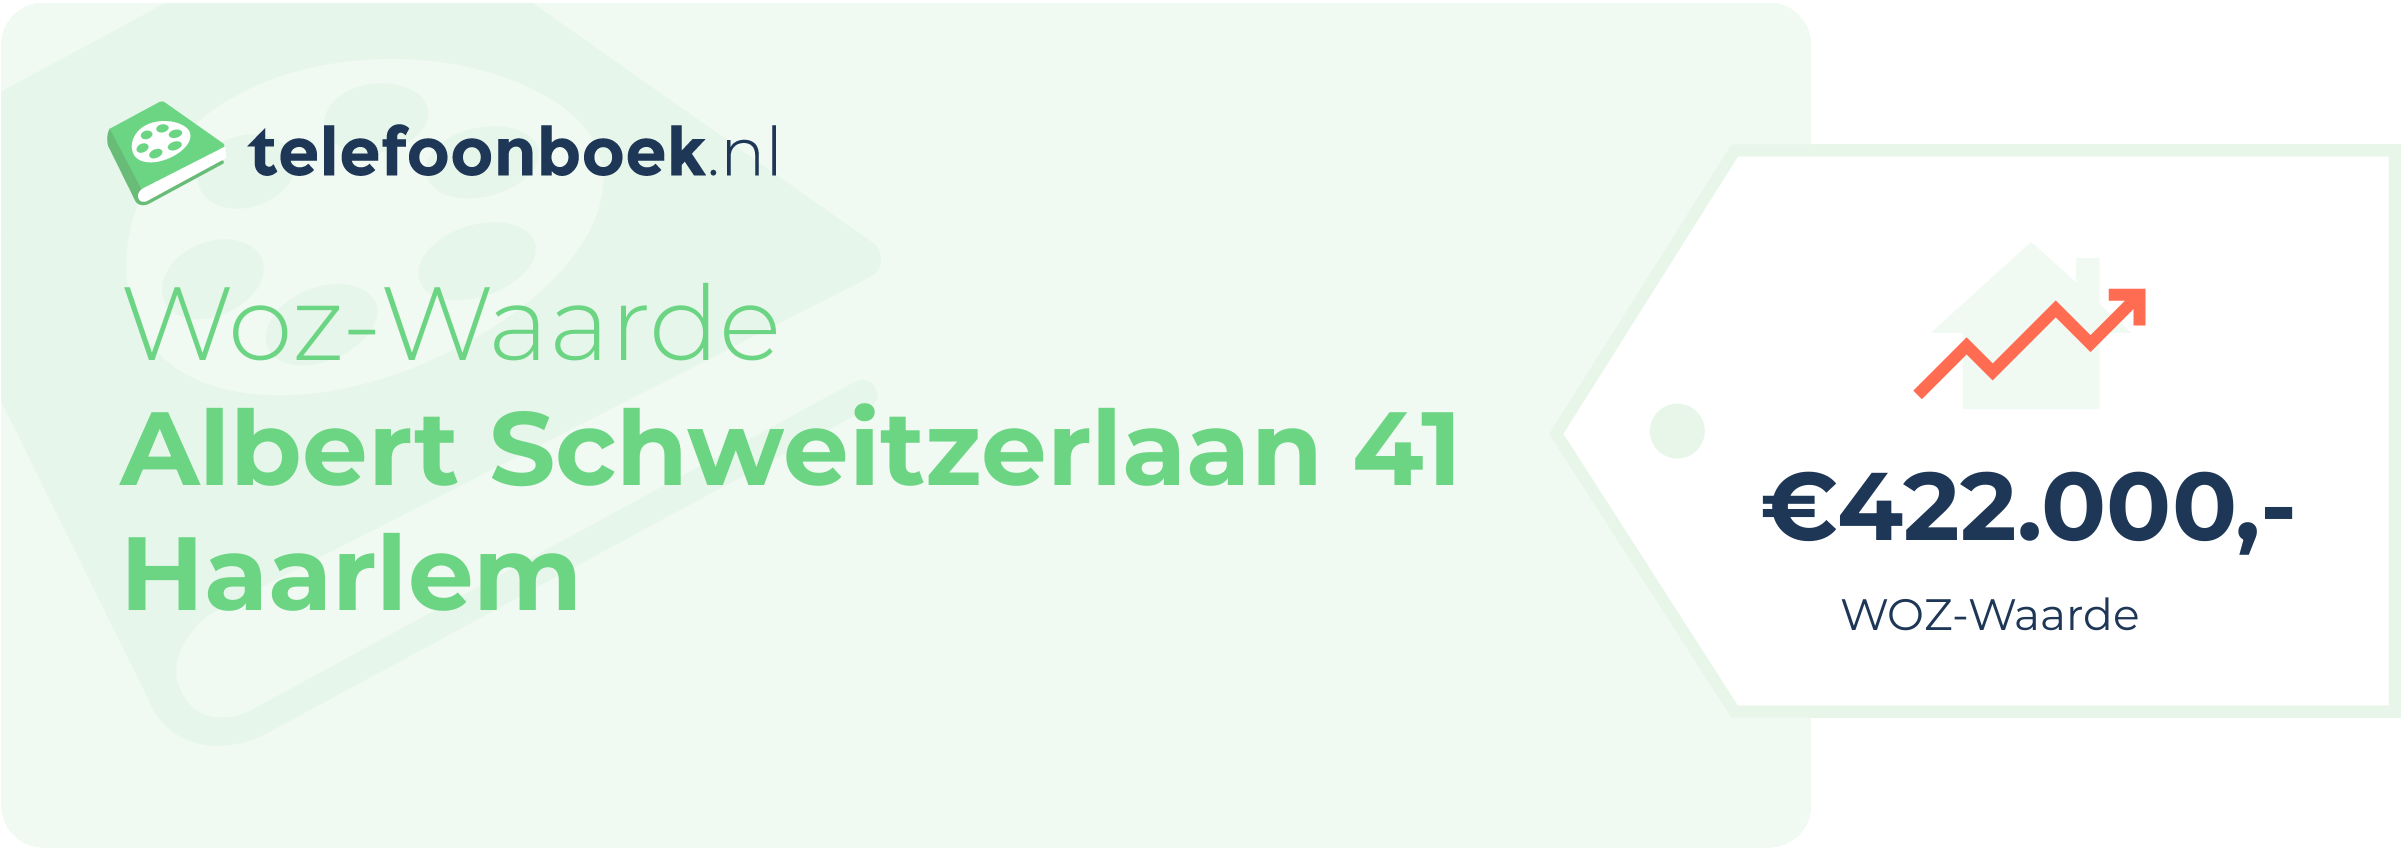 WOZ-waarde Albert Schweitzerlaan 41 Haarlem